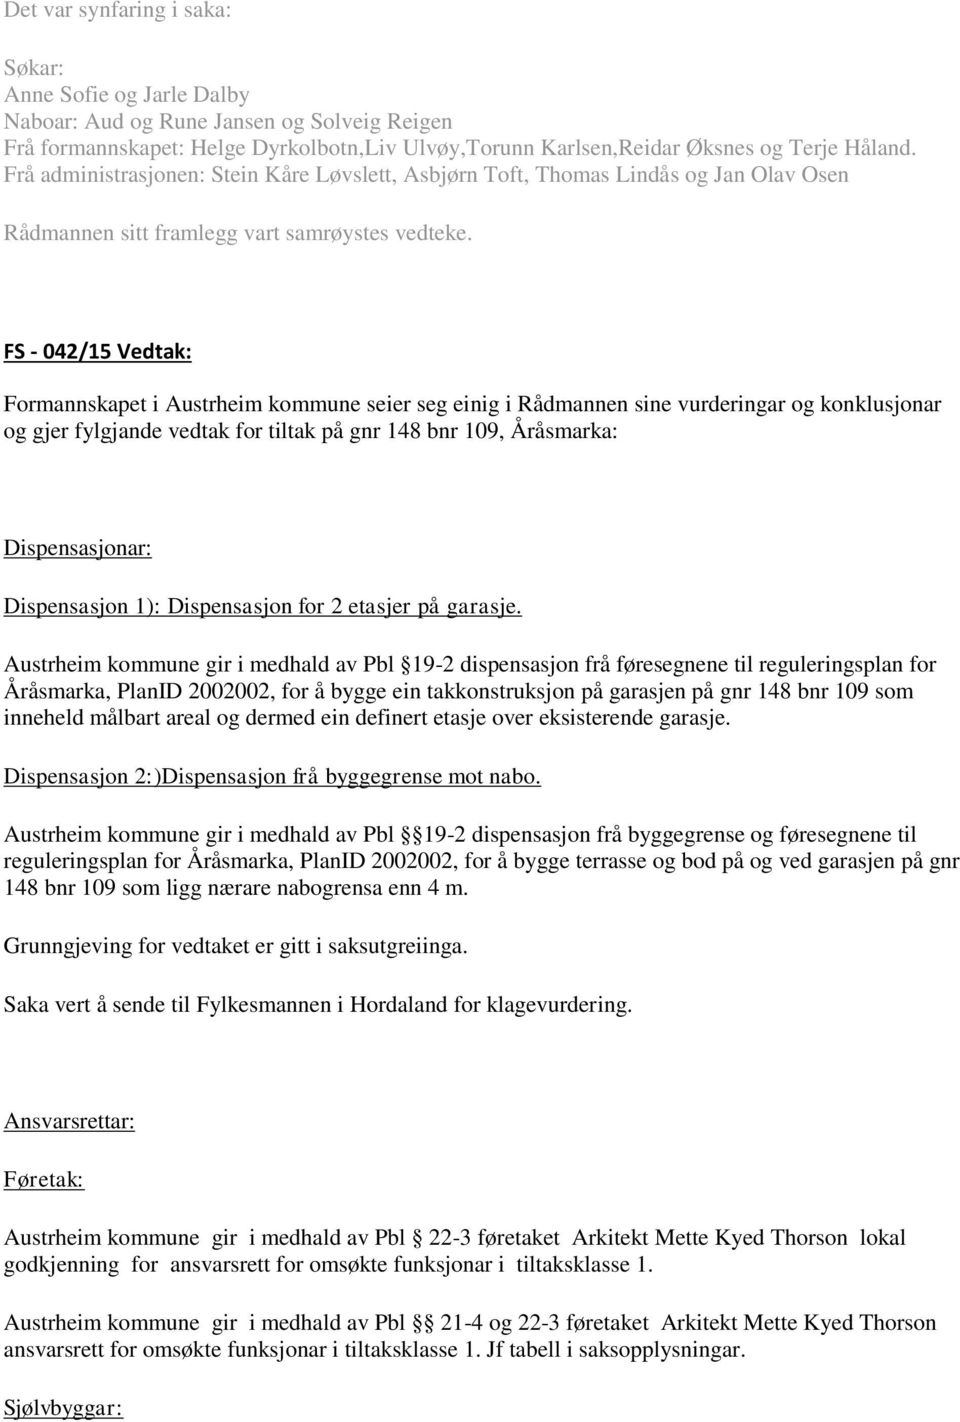 FS - 042/15 Vedtak: Formannskapet i Austrheim kommune seier seg einig i Rådmannen sine vurderingar og konklusjonar og gjer fylgjande vedtak for tiltak på gnr 148 bnr 109, Åråsmarka: Dispensasjonar: